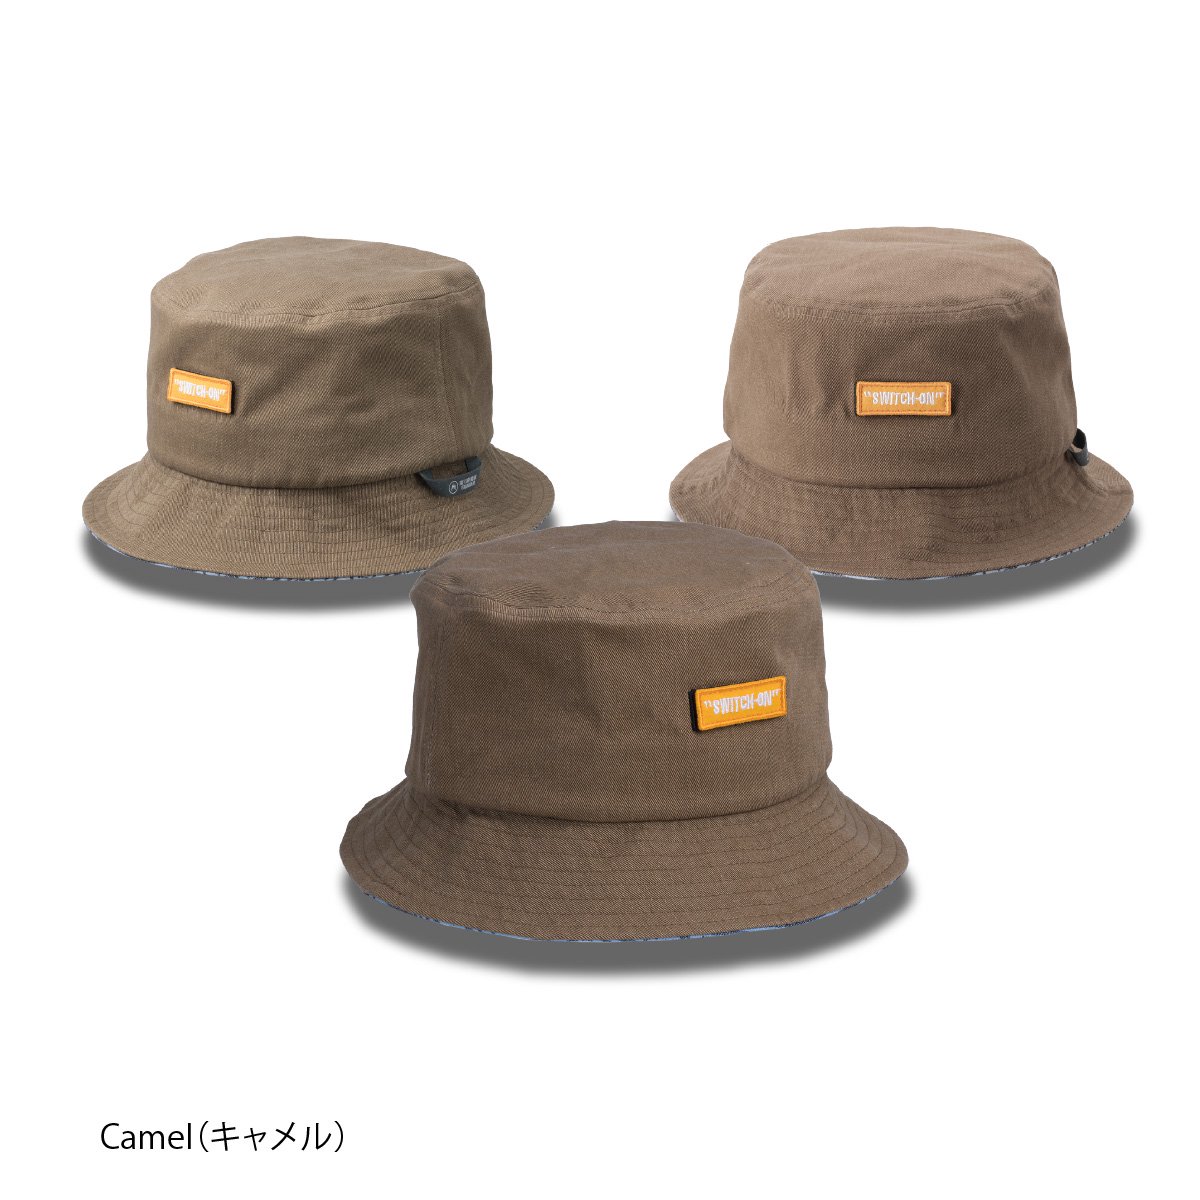 3A emblem Bucket-hat